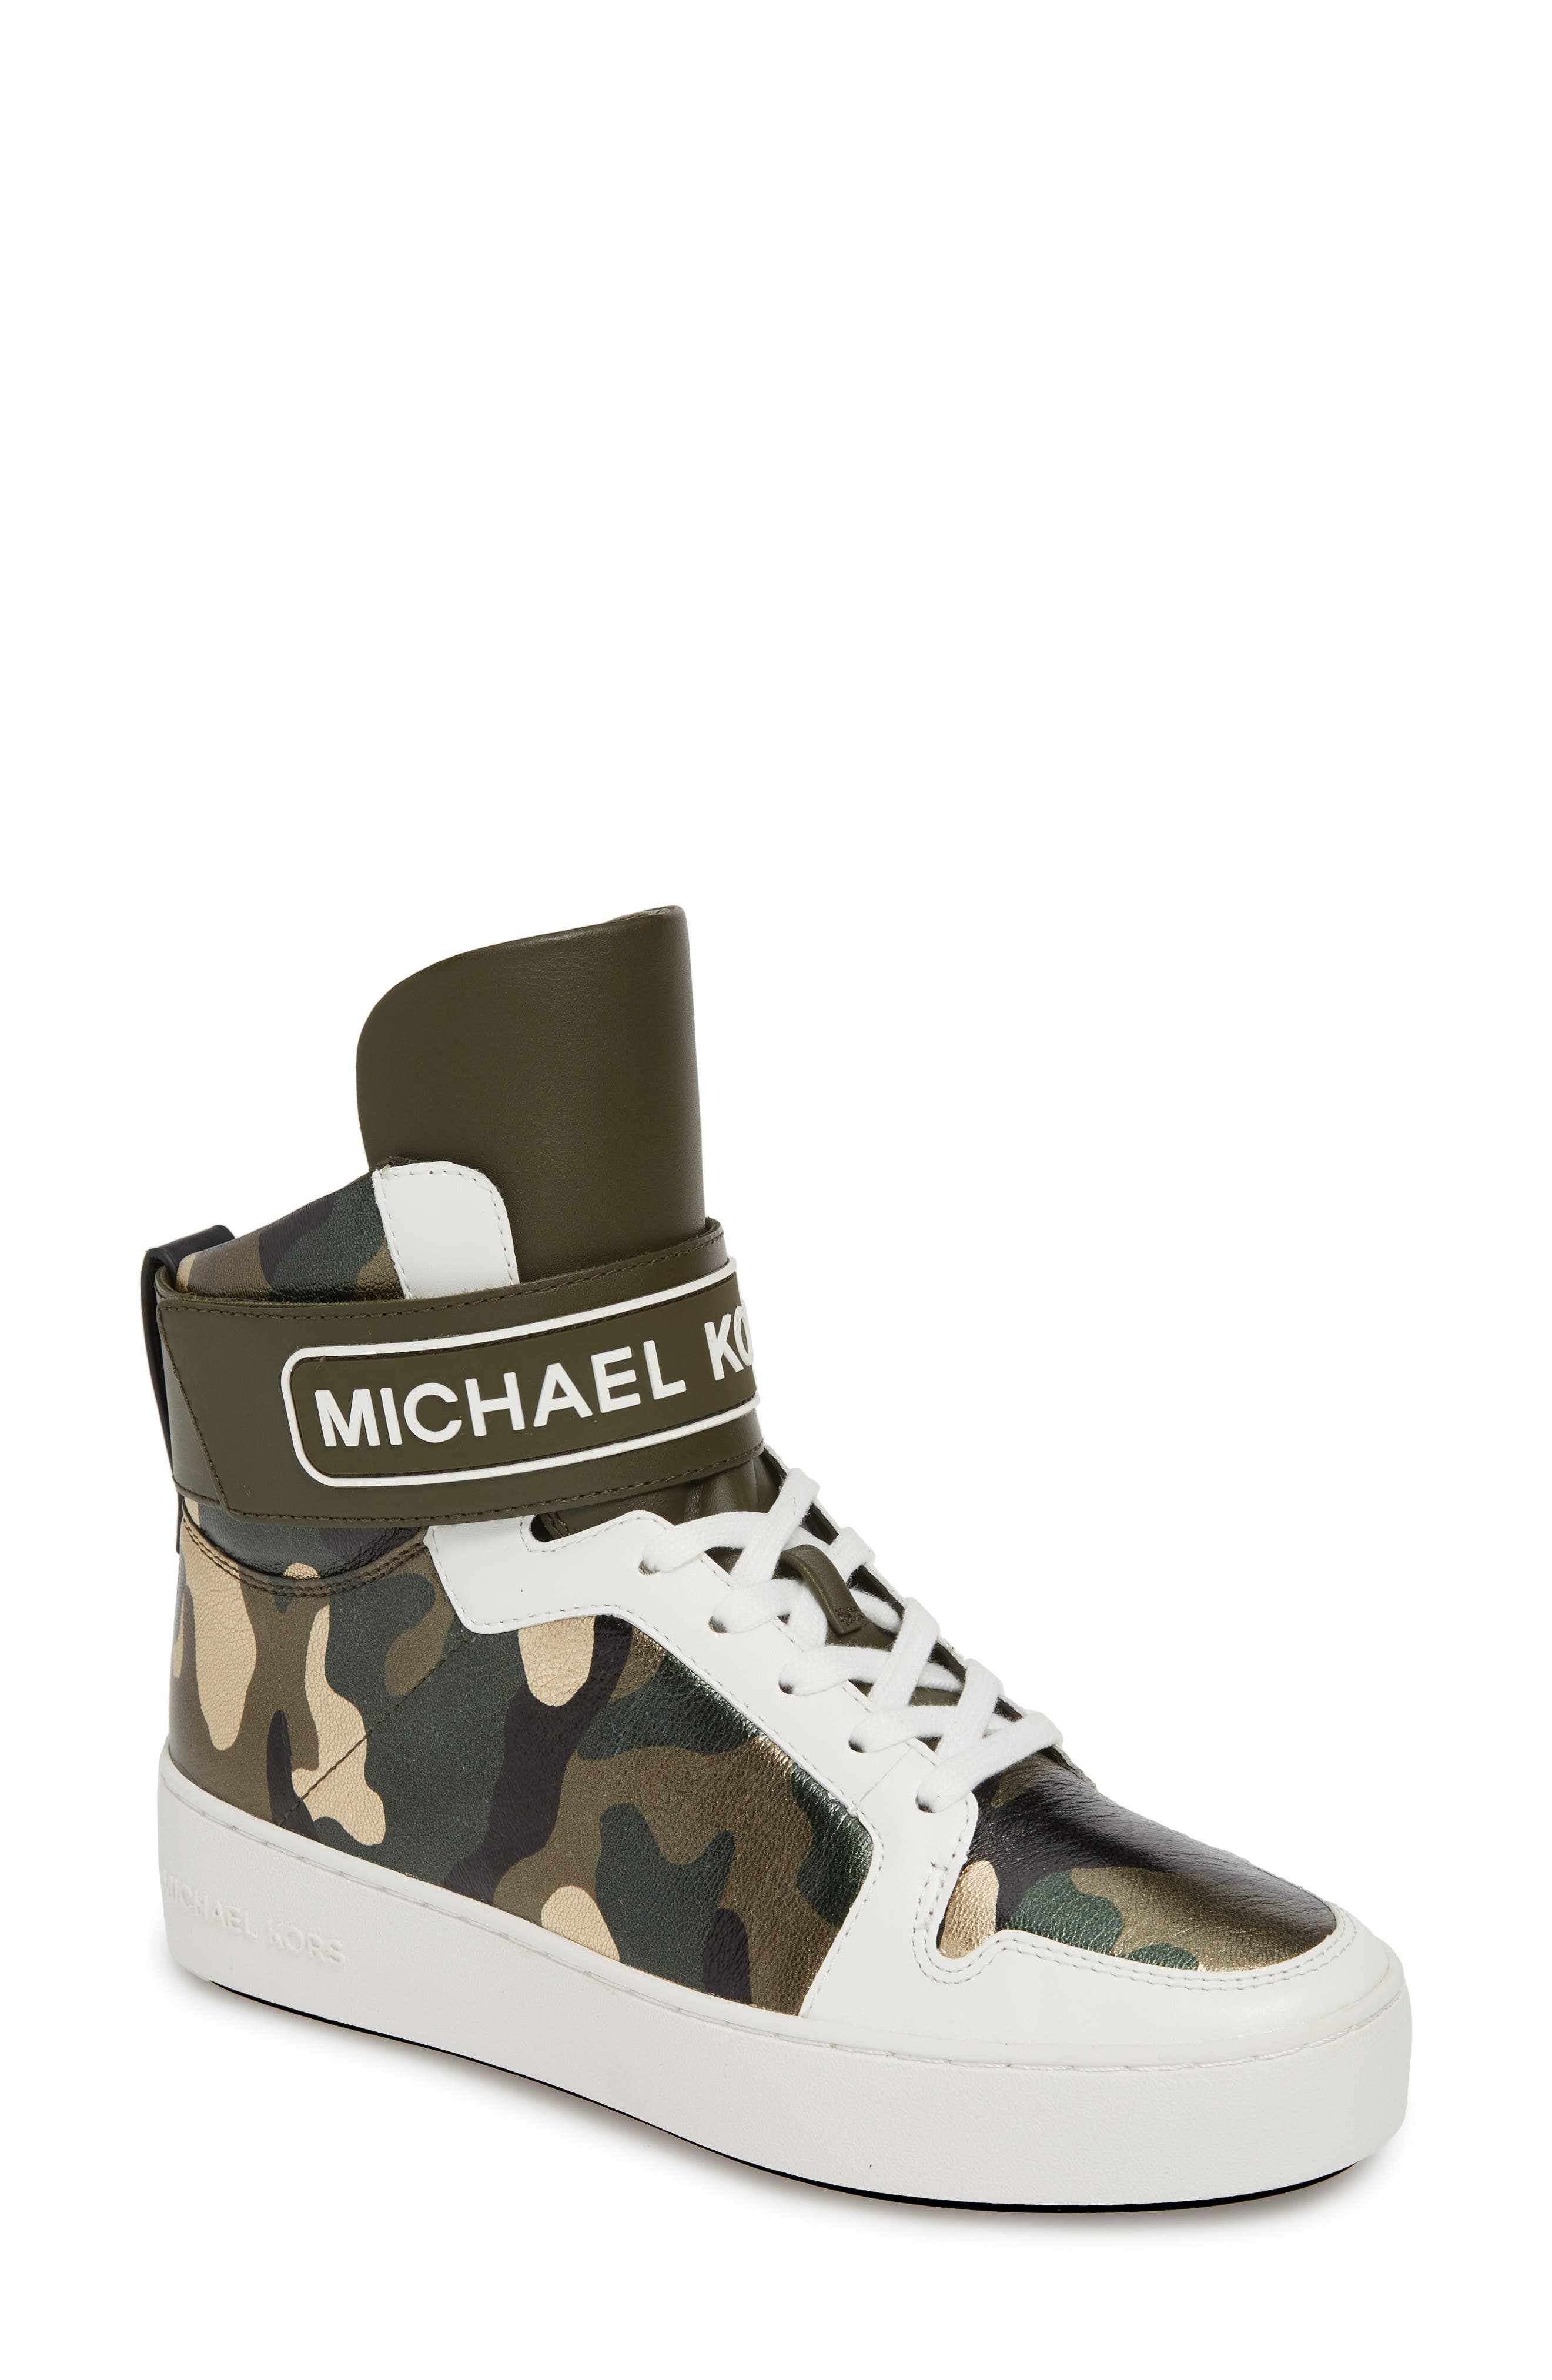 michael kors casual sneakers